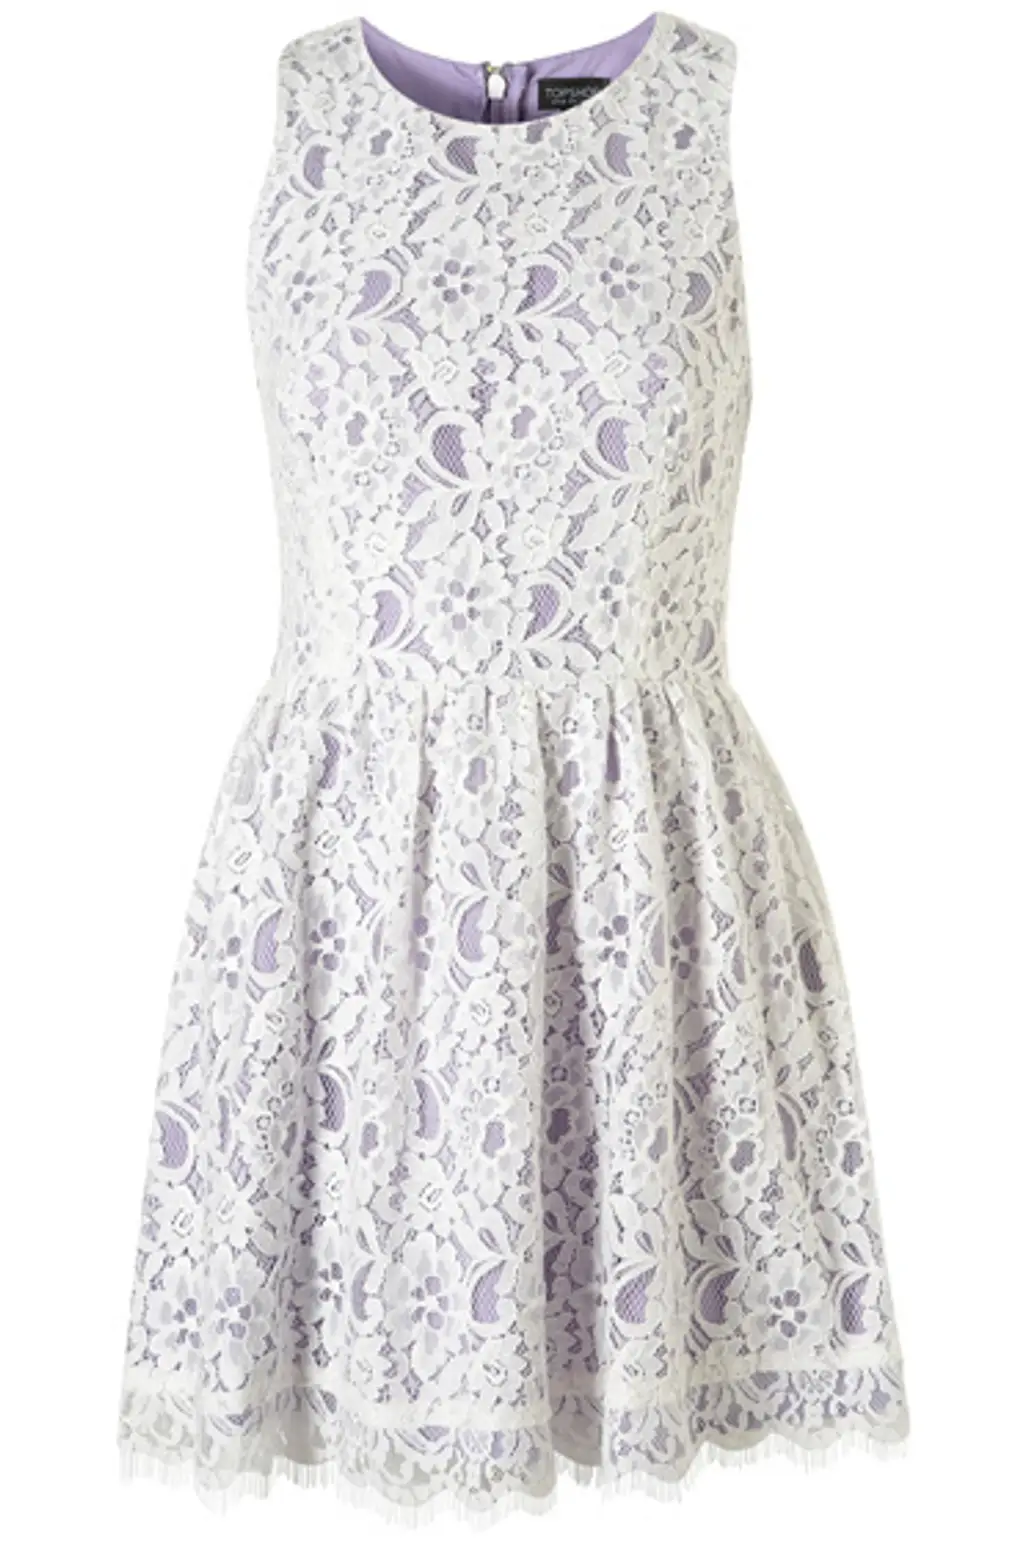 Topshop Lace Dress